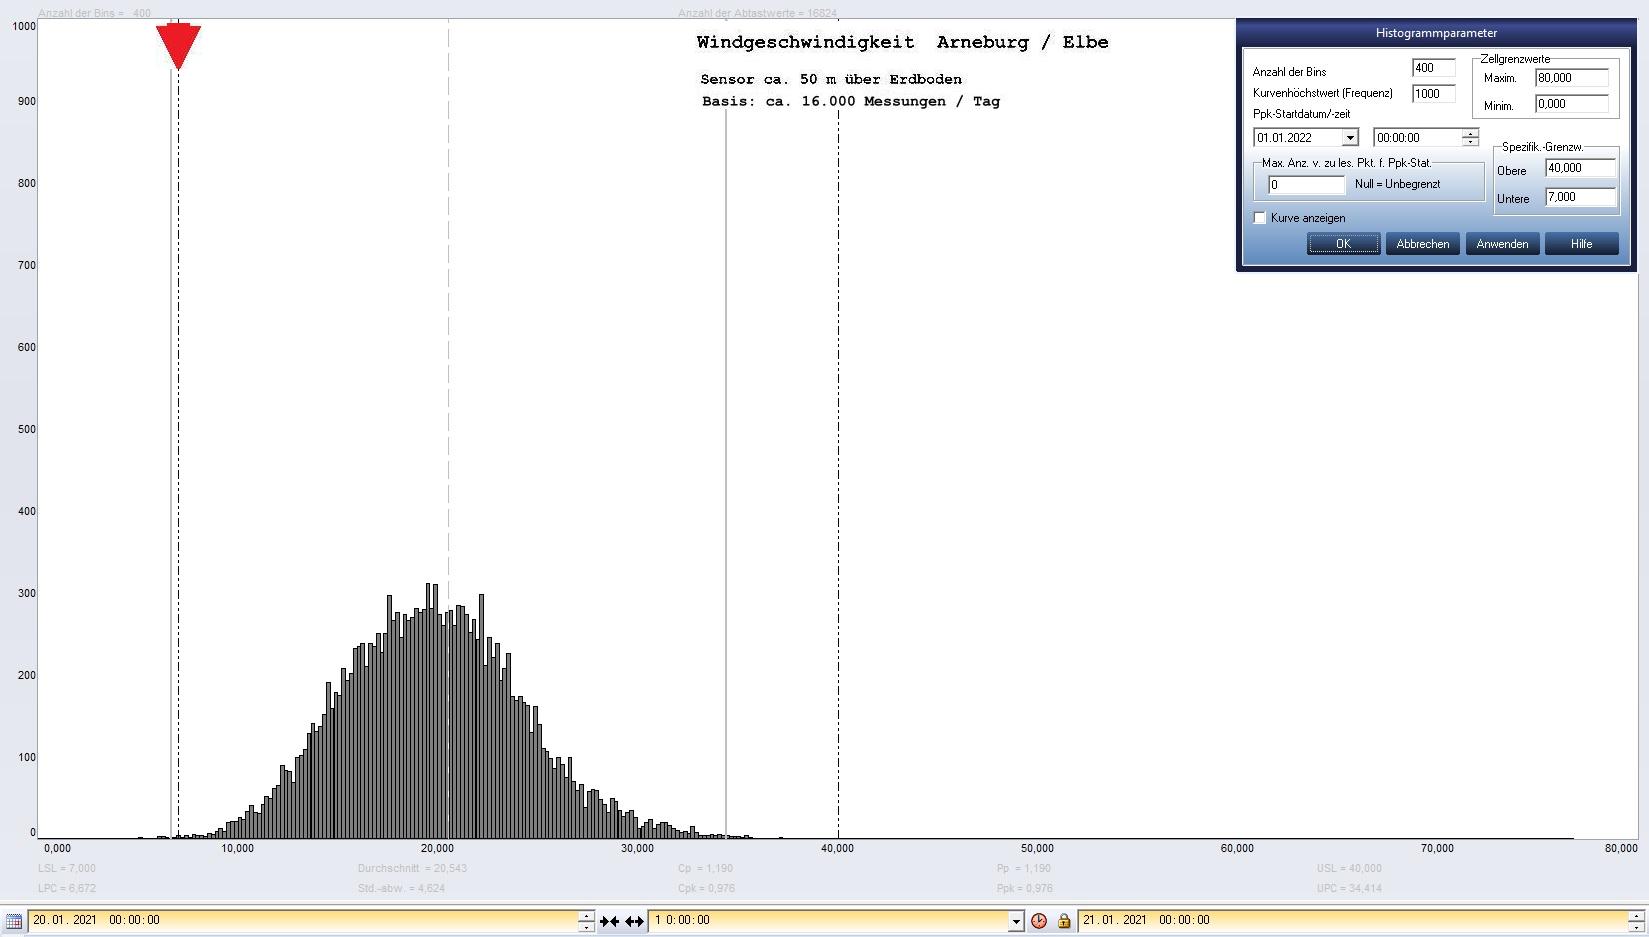 Arneburg Tages-Histogramm Winddaten, 20.01.2021
  Histogramm, Sensor auf Gebäude, ca. 50 m über Erdboden, Basis: 5s-Aufzeichnung